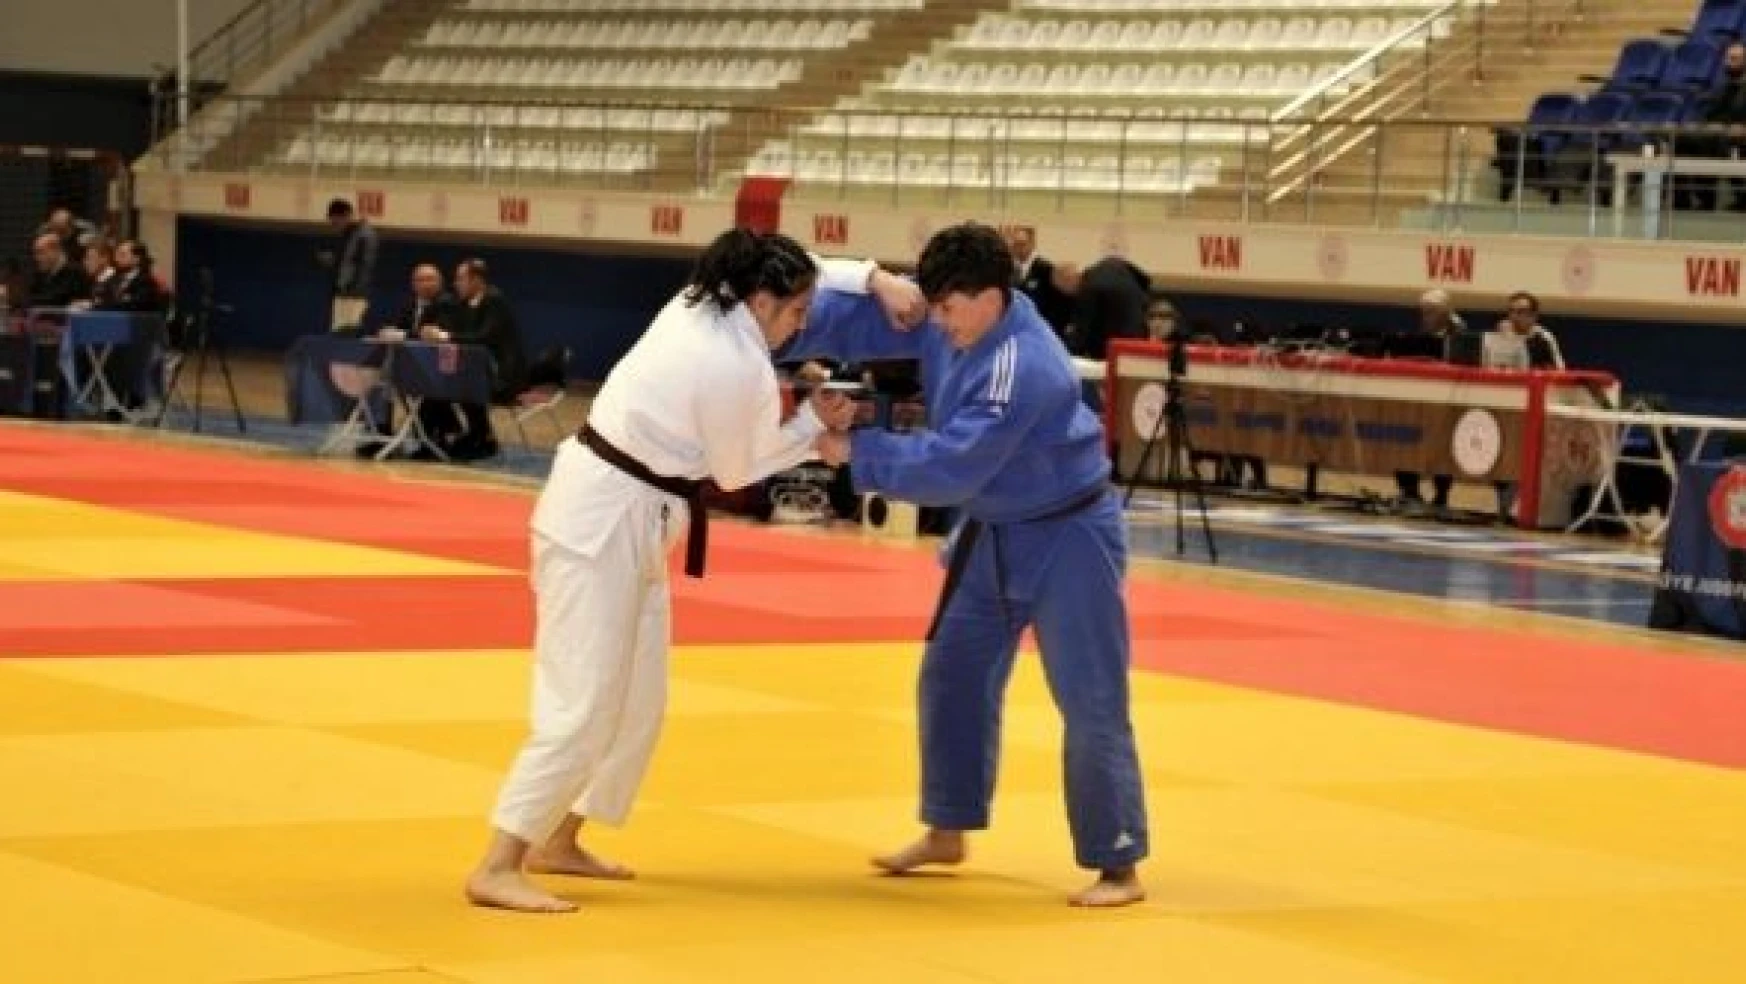 Spor Toto Ümitler Mix 1. Lig 1. Etap Judo Müsabakaları başladı